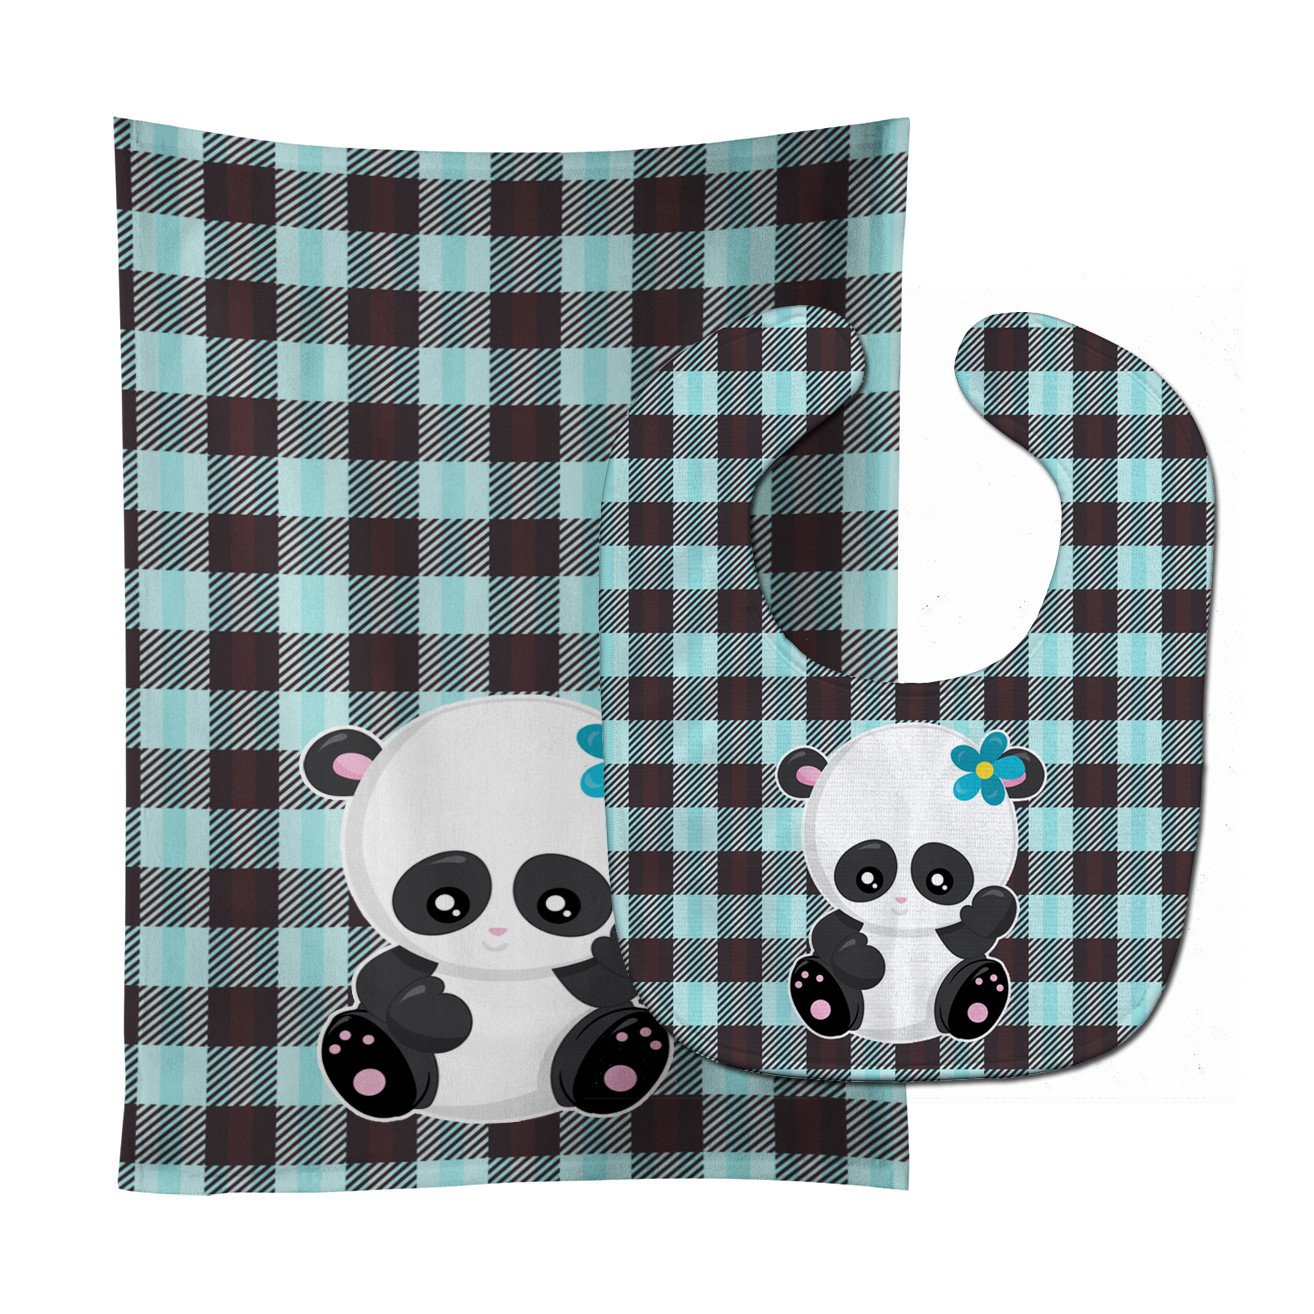 Panda on Plaid Baby Bib & Burp Cloth BB6800STBU by Caroline's Treasures